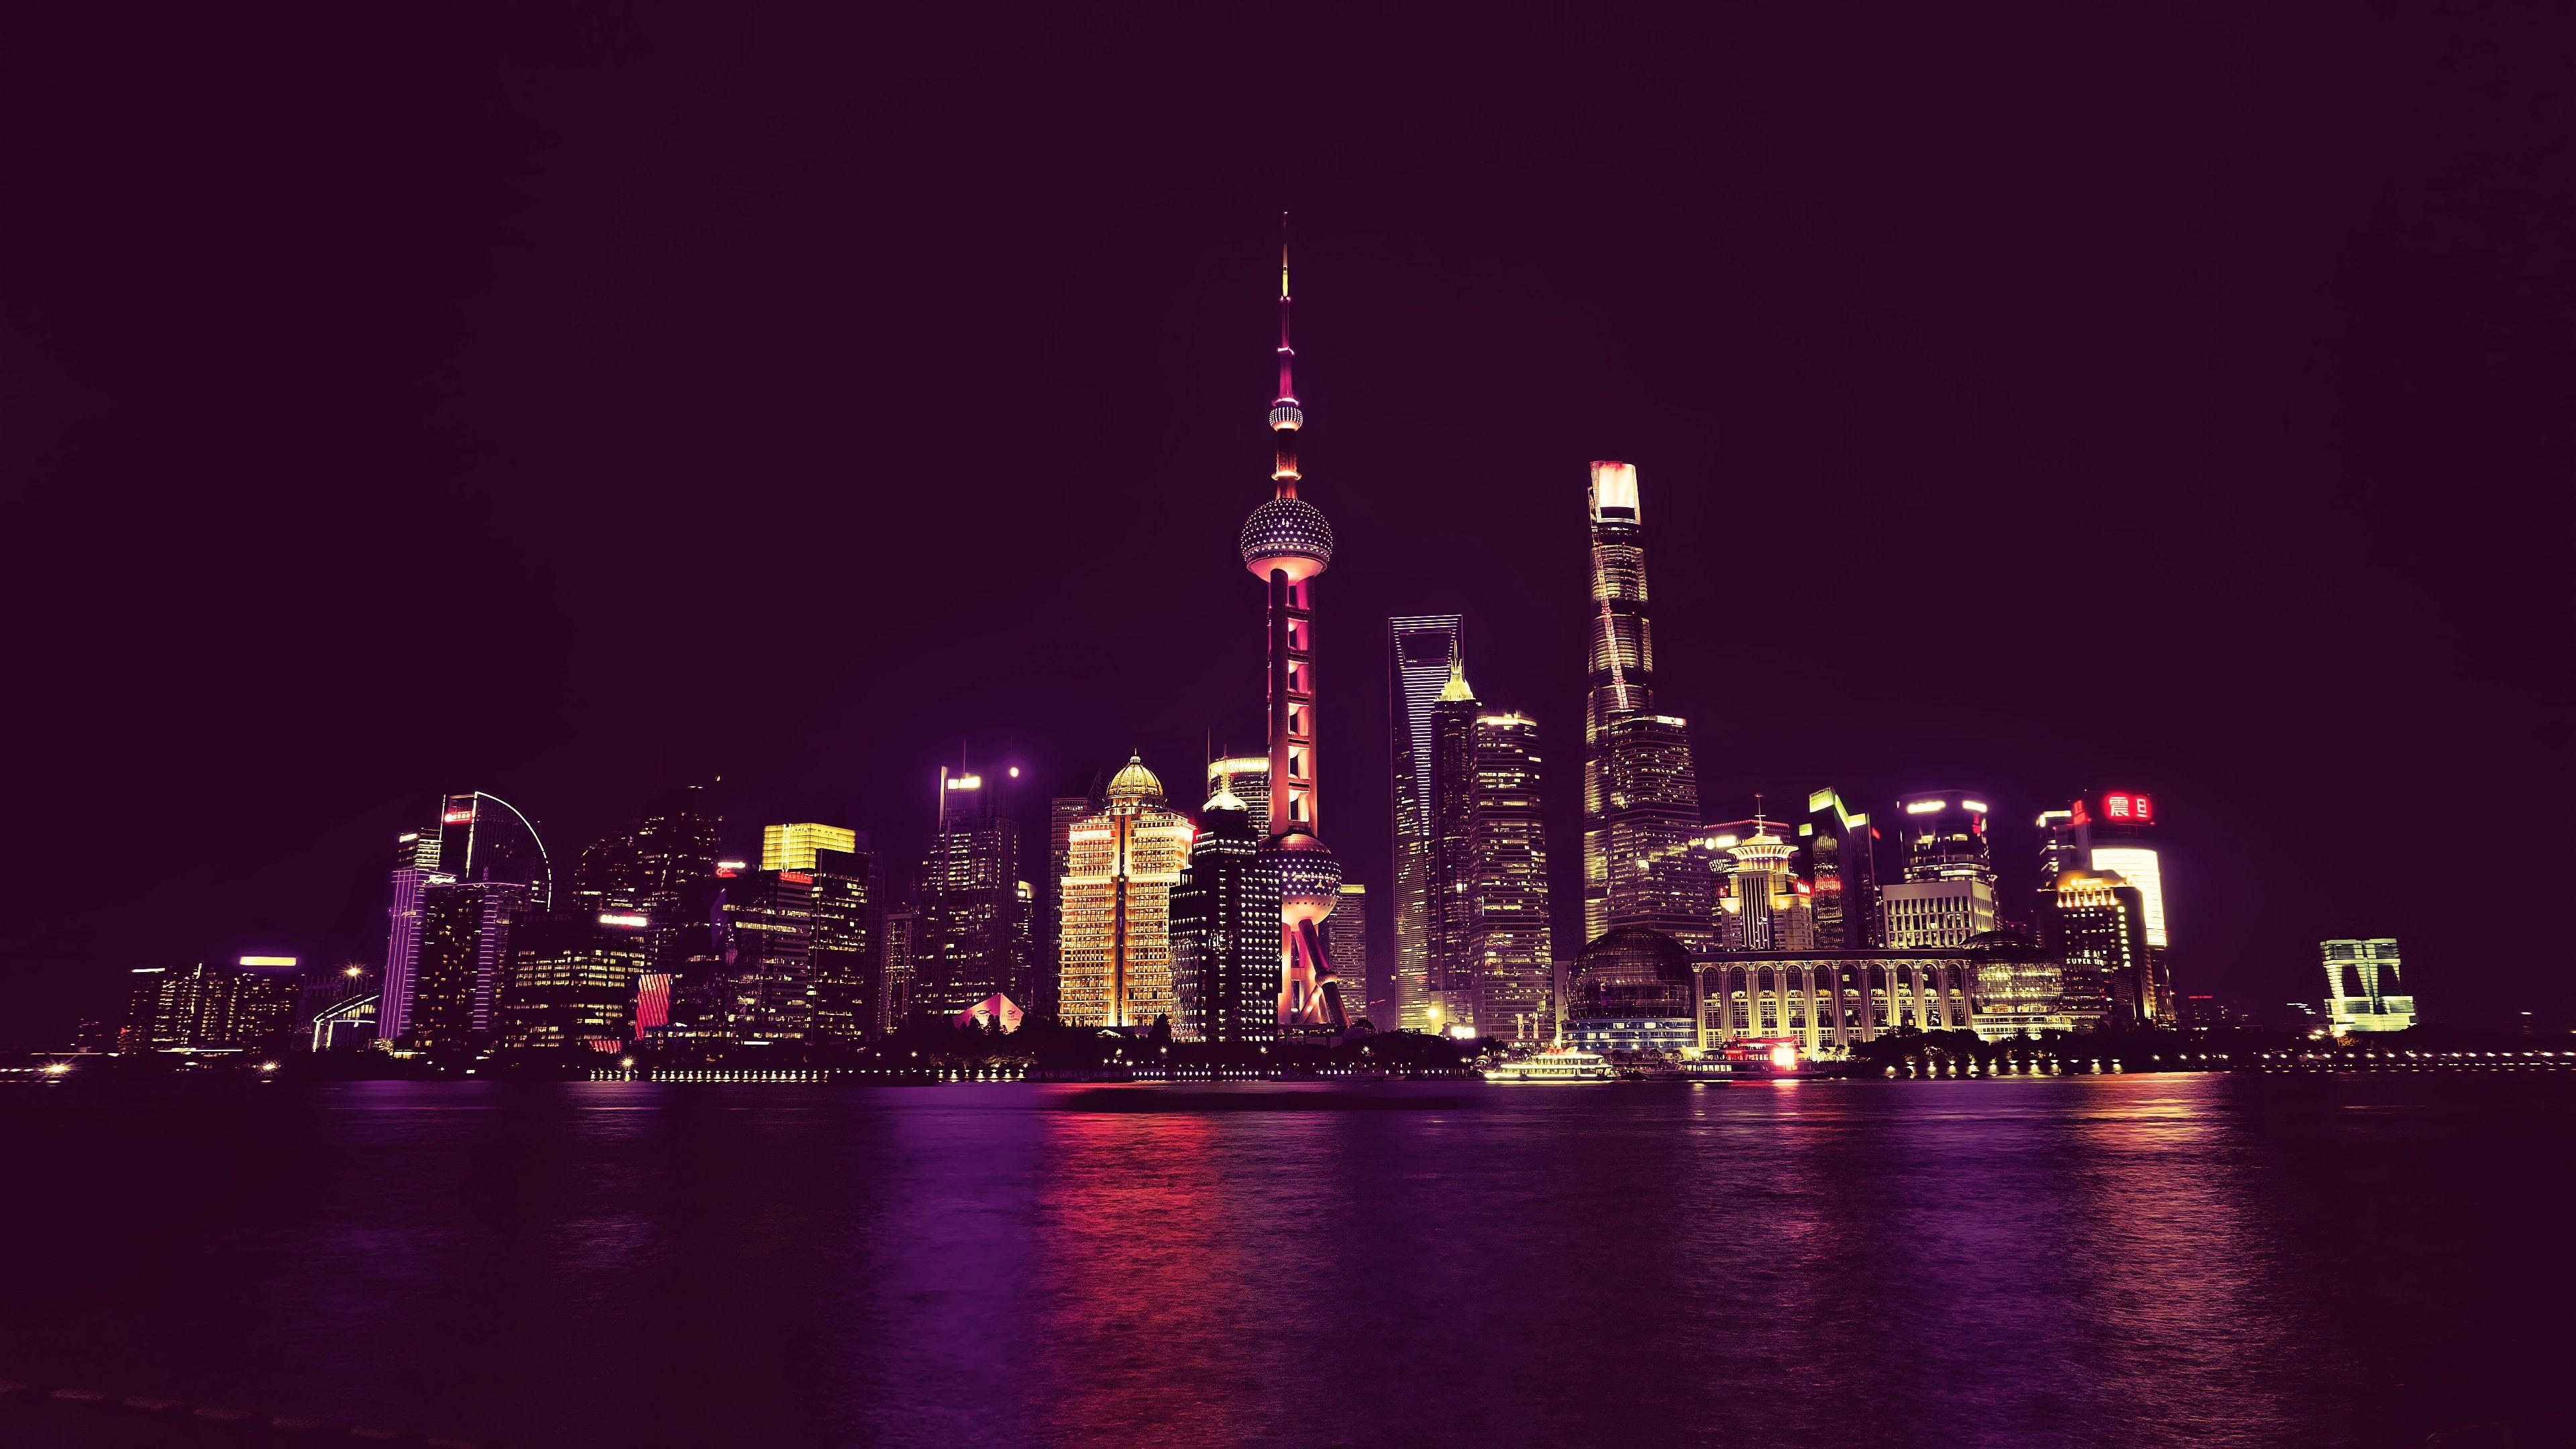 3840x2160 Hình nền Neon City Lights 4k Ultra HD của Trung Quốc.  Tiểu sử